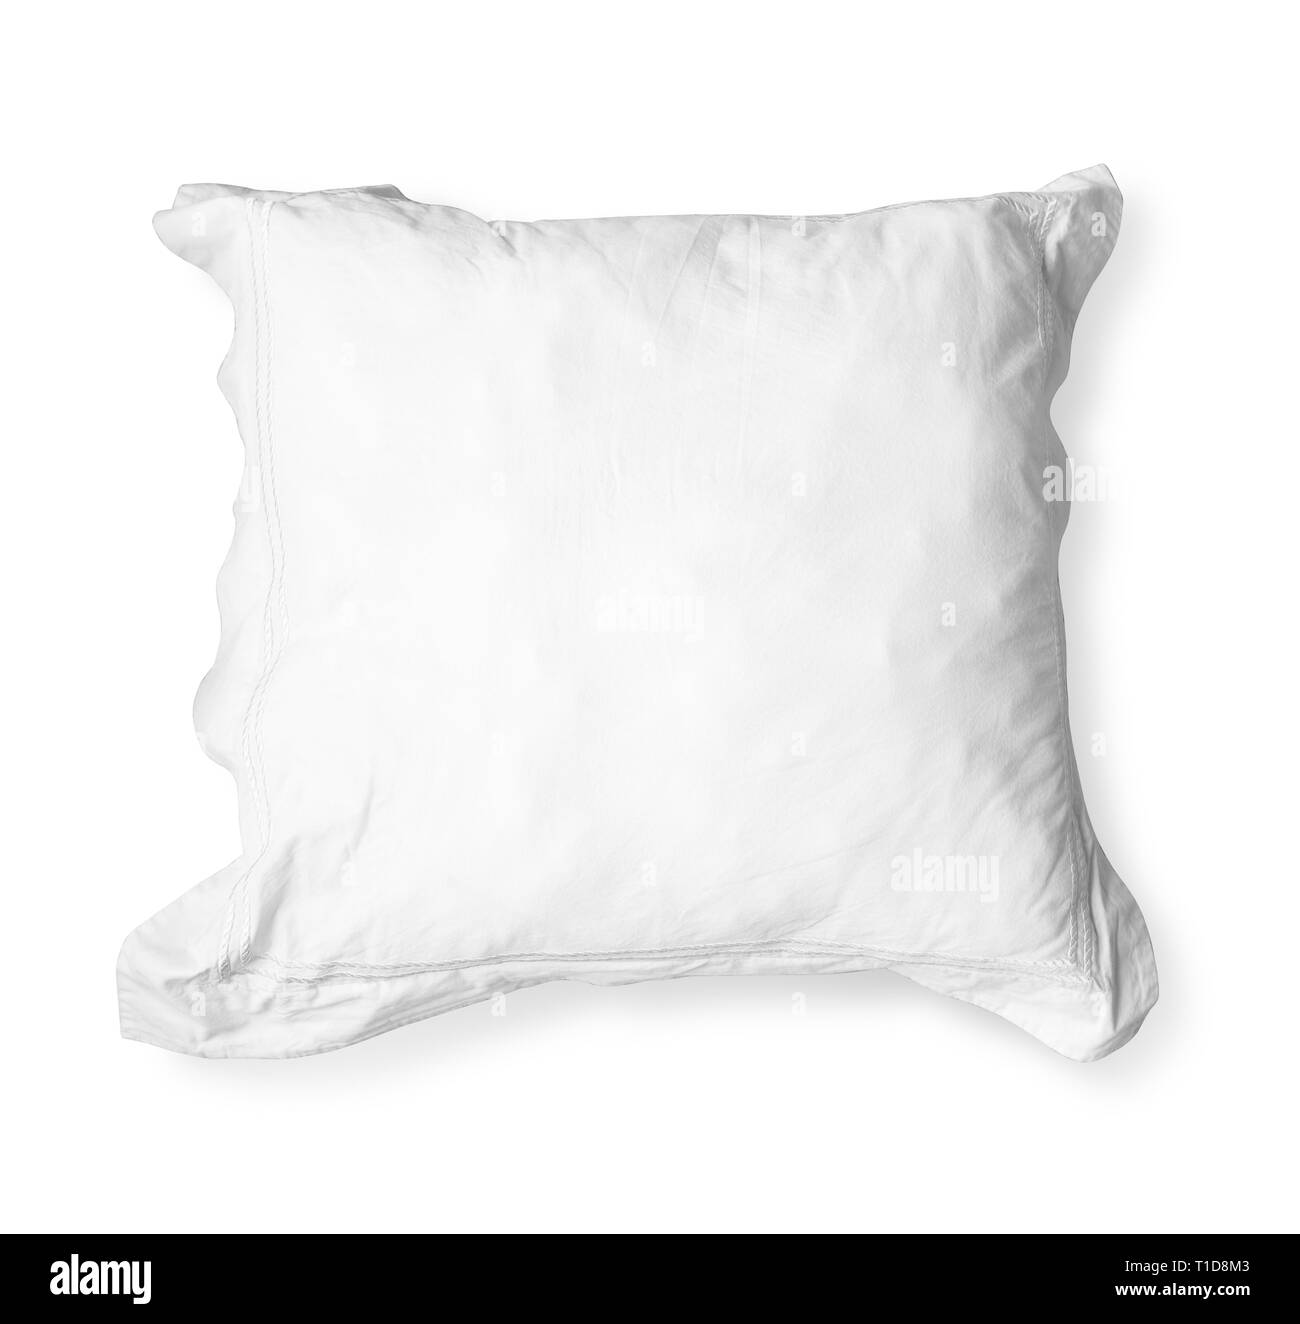 Cushion mockup Black and White Stock Photos & Images - Alamy